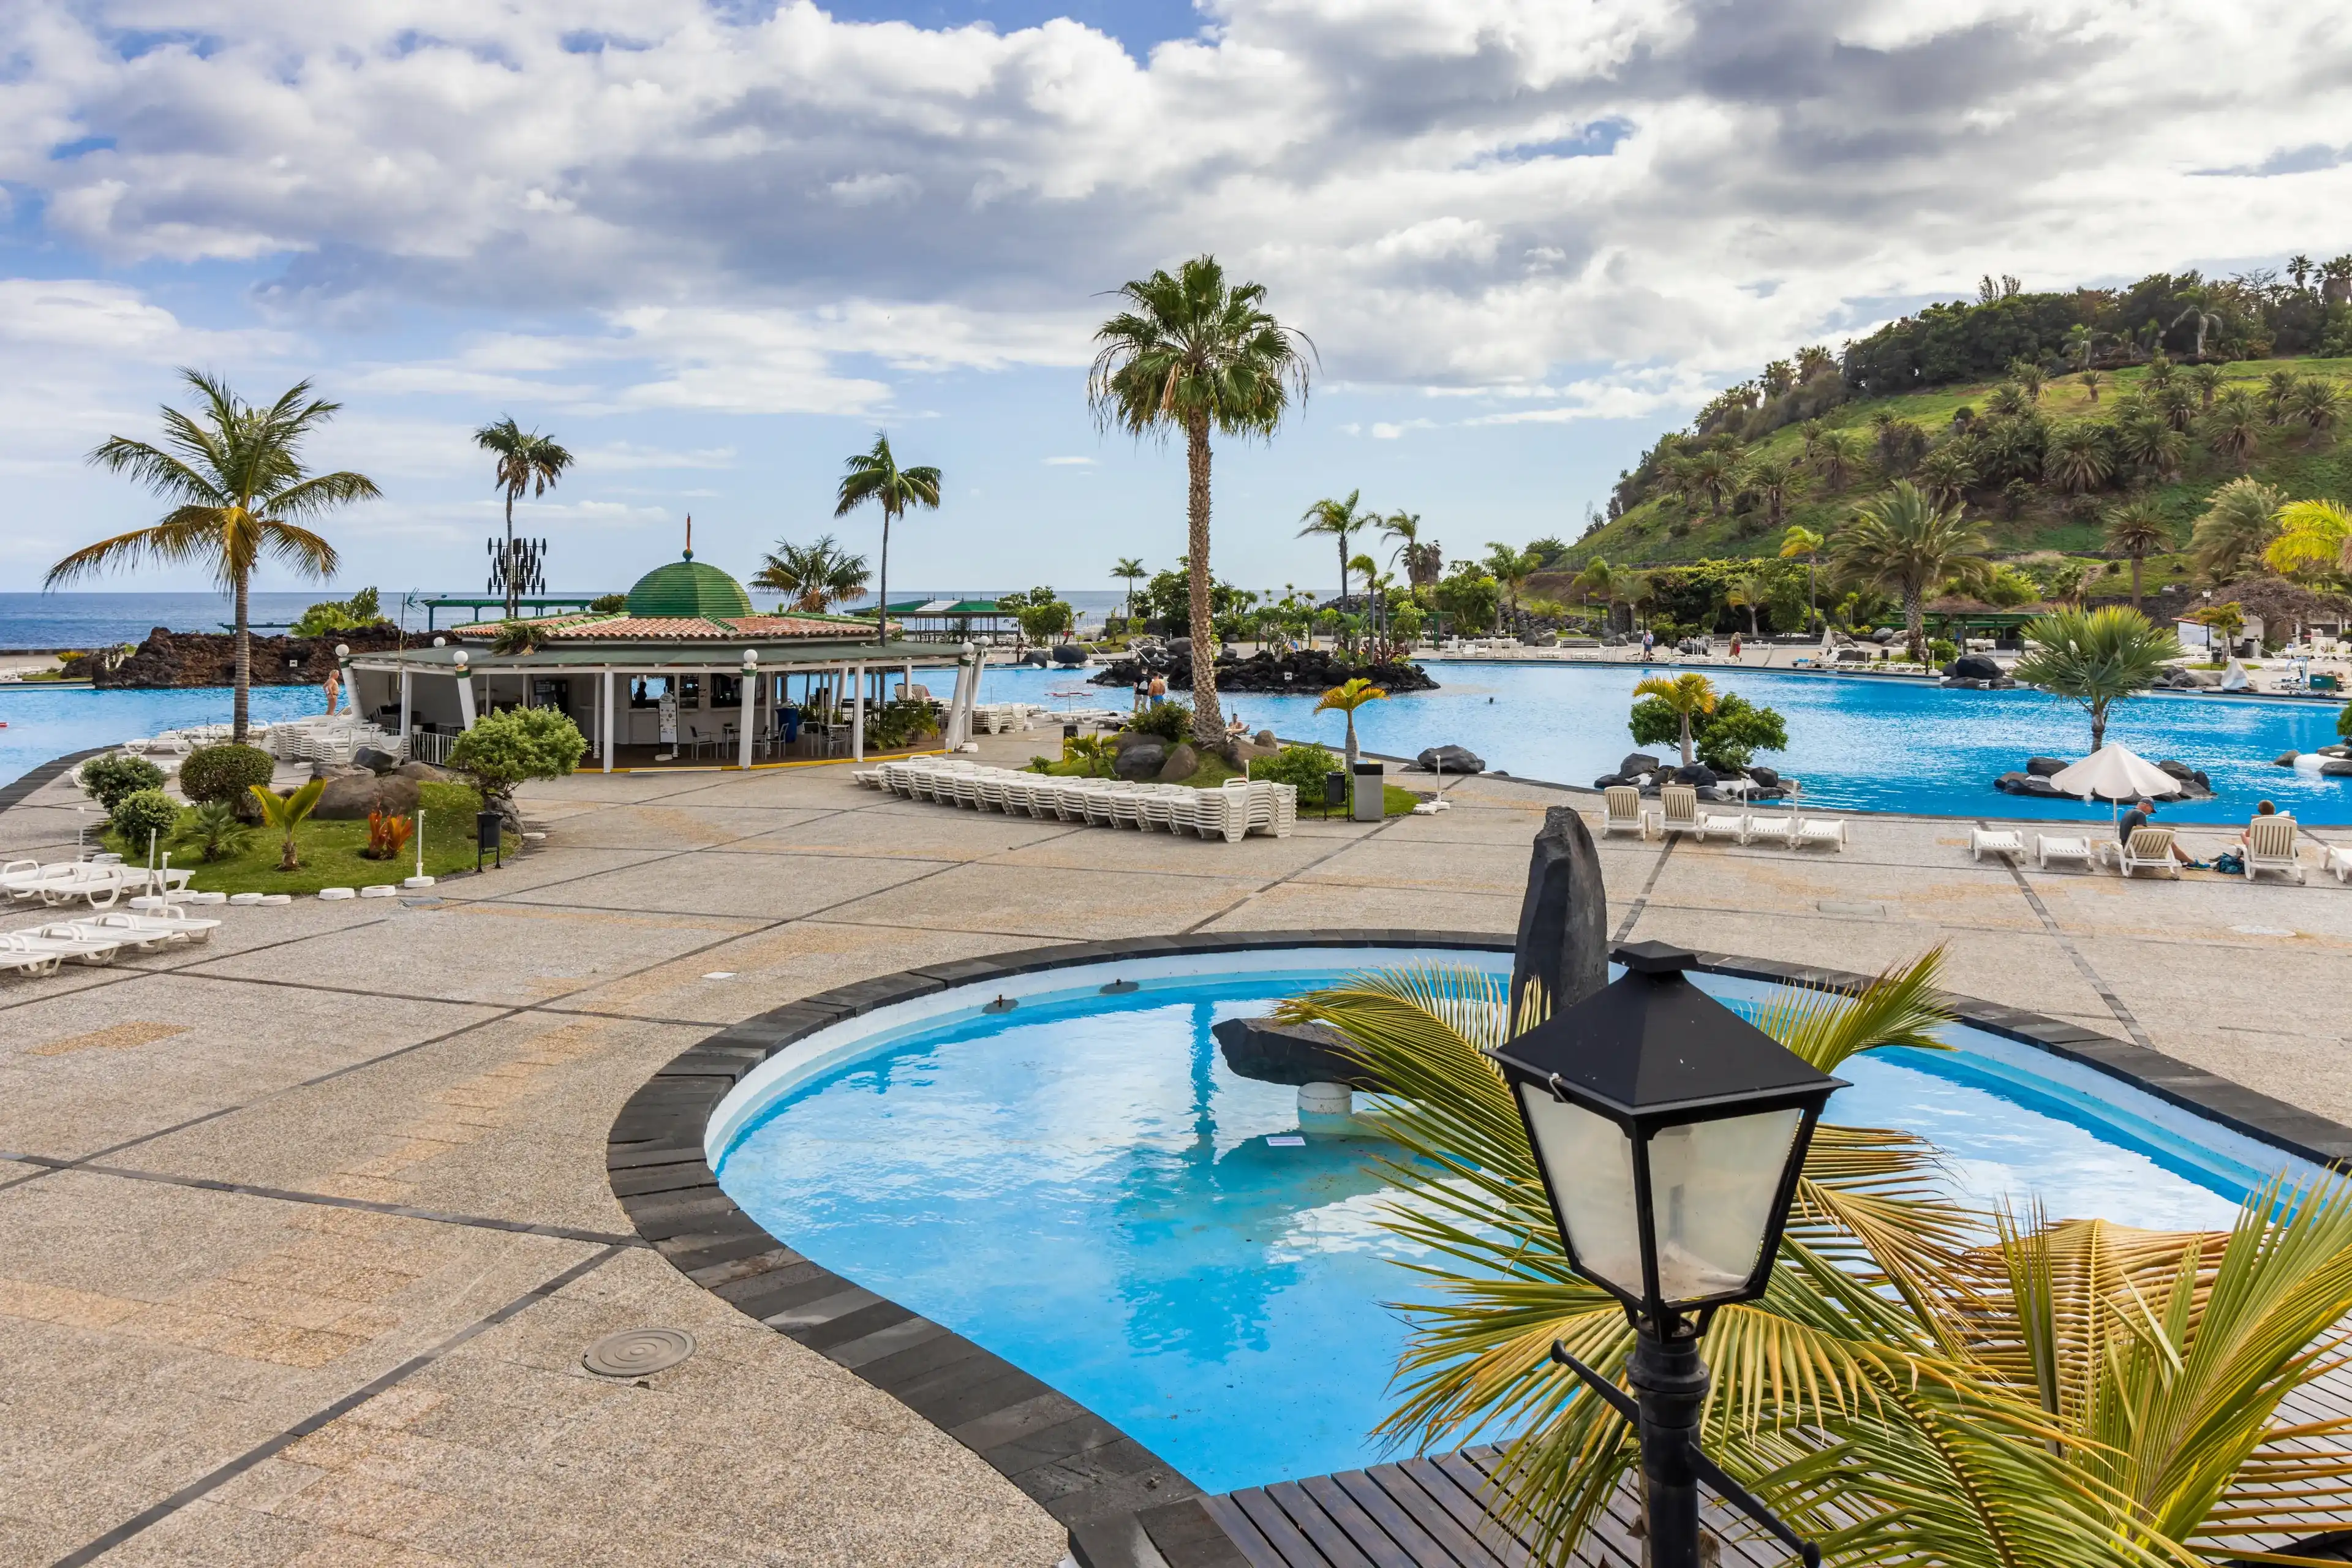 Best Santa Cruz de Tenerife hotels. Cheap hotels in Santa Cruz de Tenerife, Spain